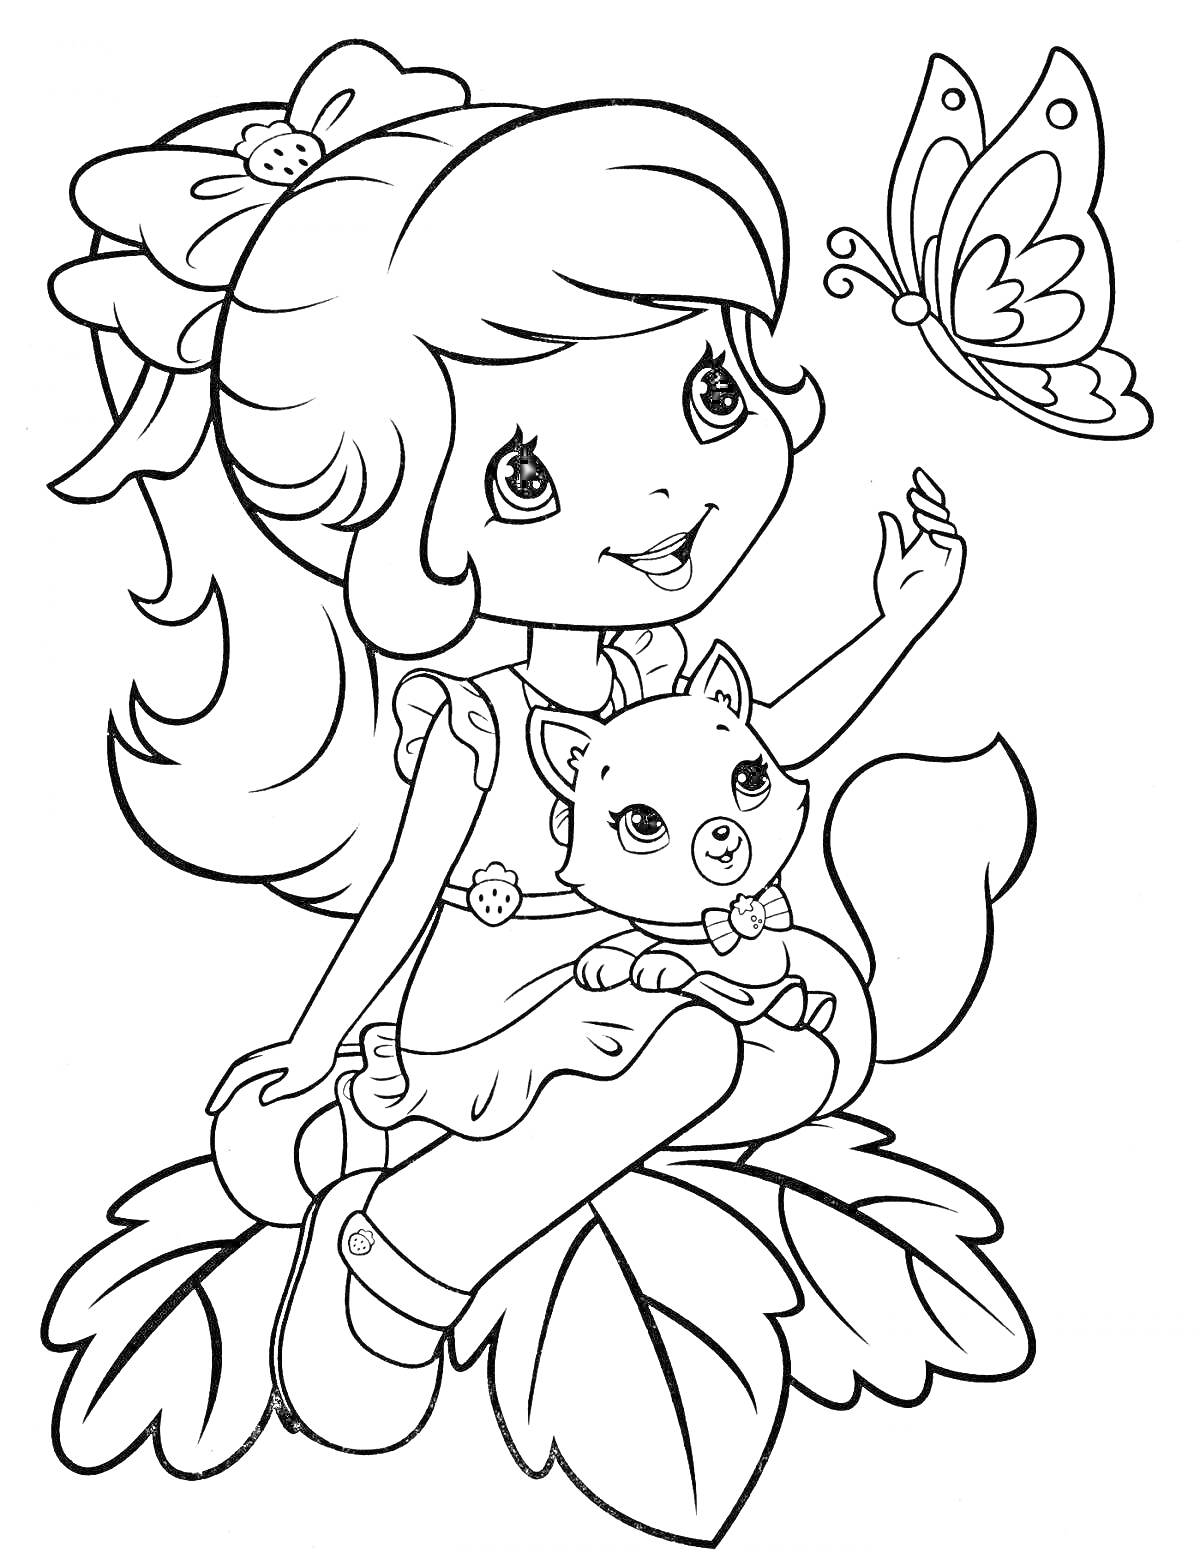 Раскраска Девочка с кошкой и бабочкой на листьях